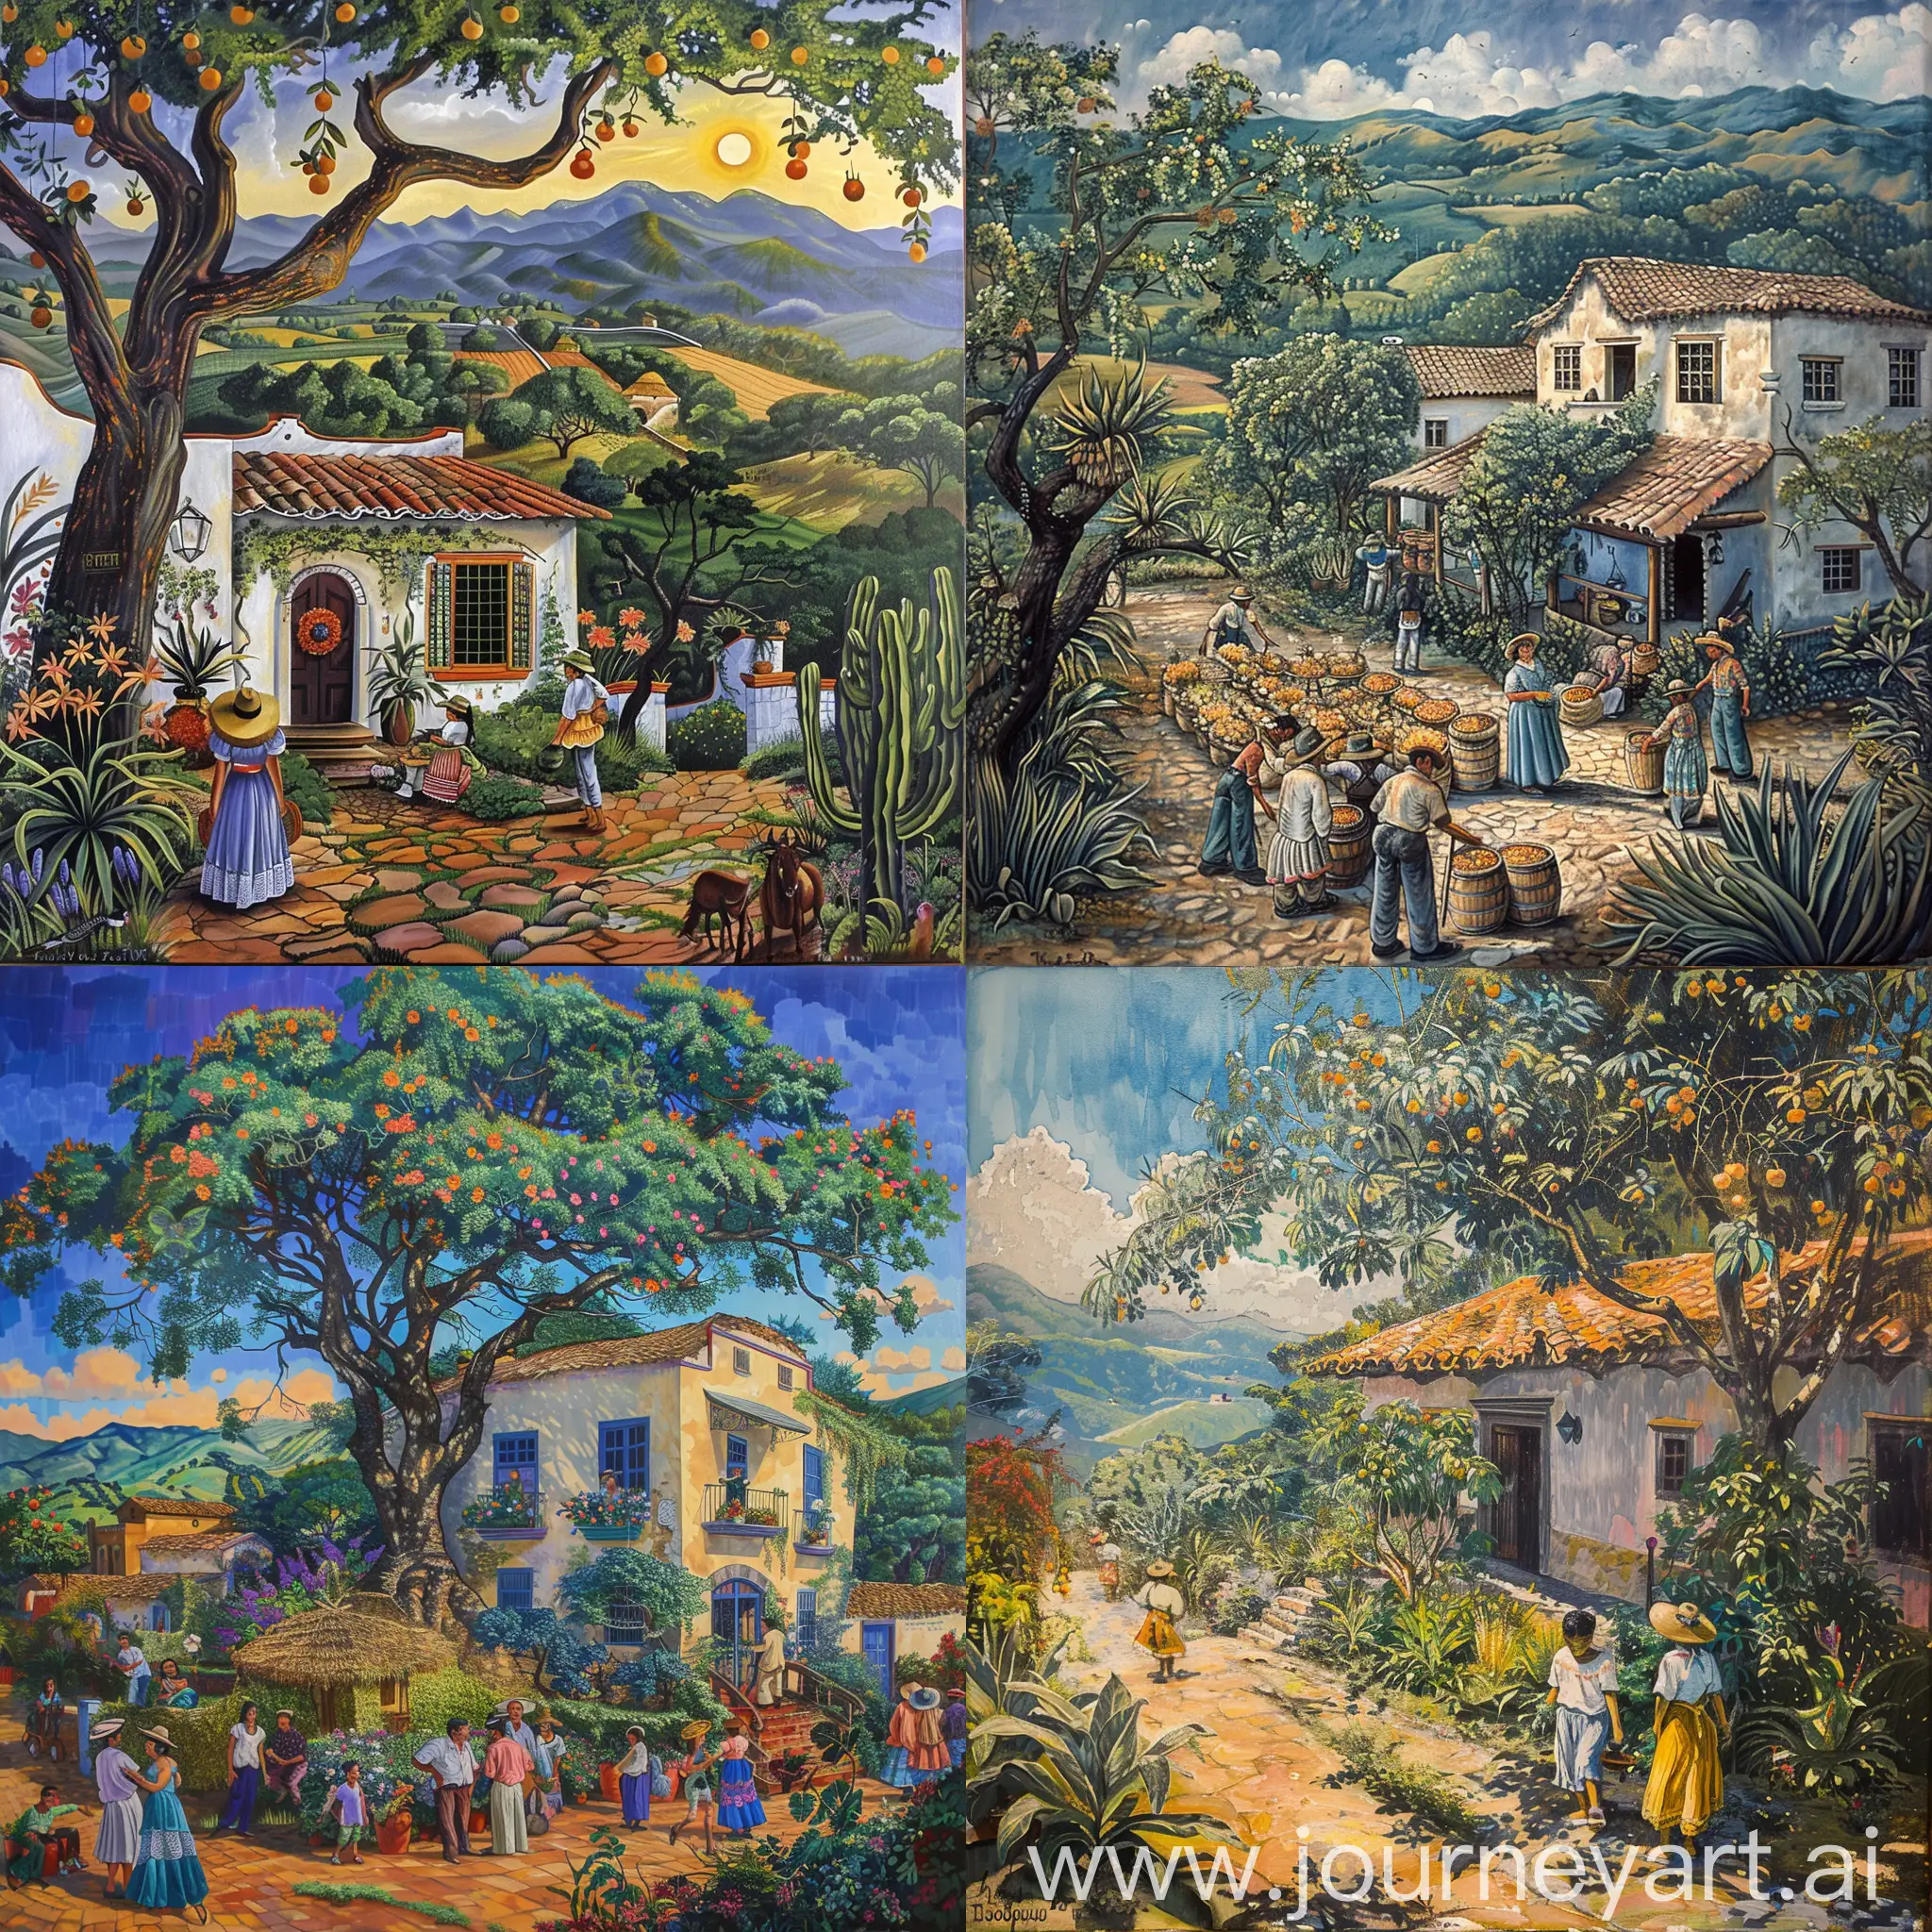 Tlajomulco De Zúñiga, Jalisco, México, Pintura, Mural, Hacienda tradicional, tradiciones familiares